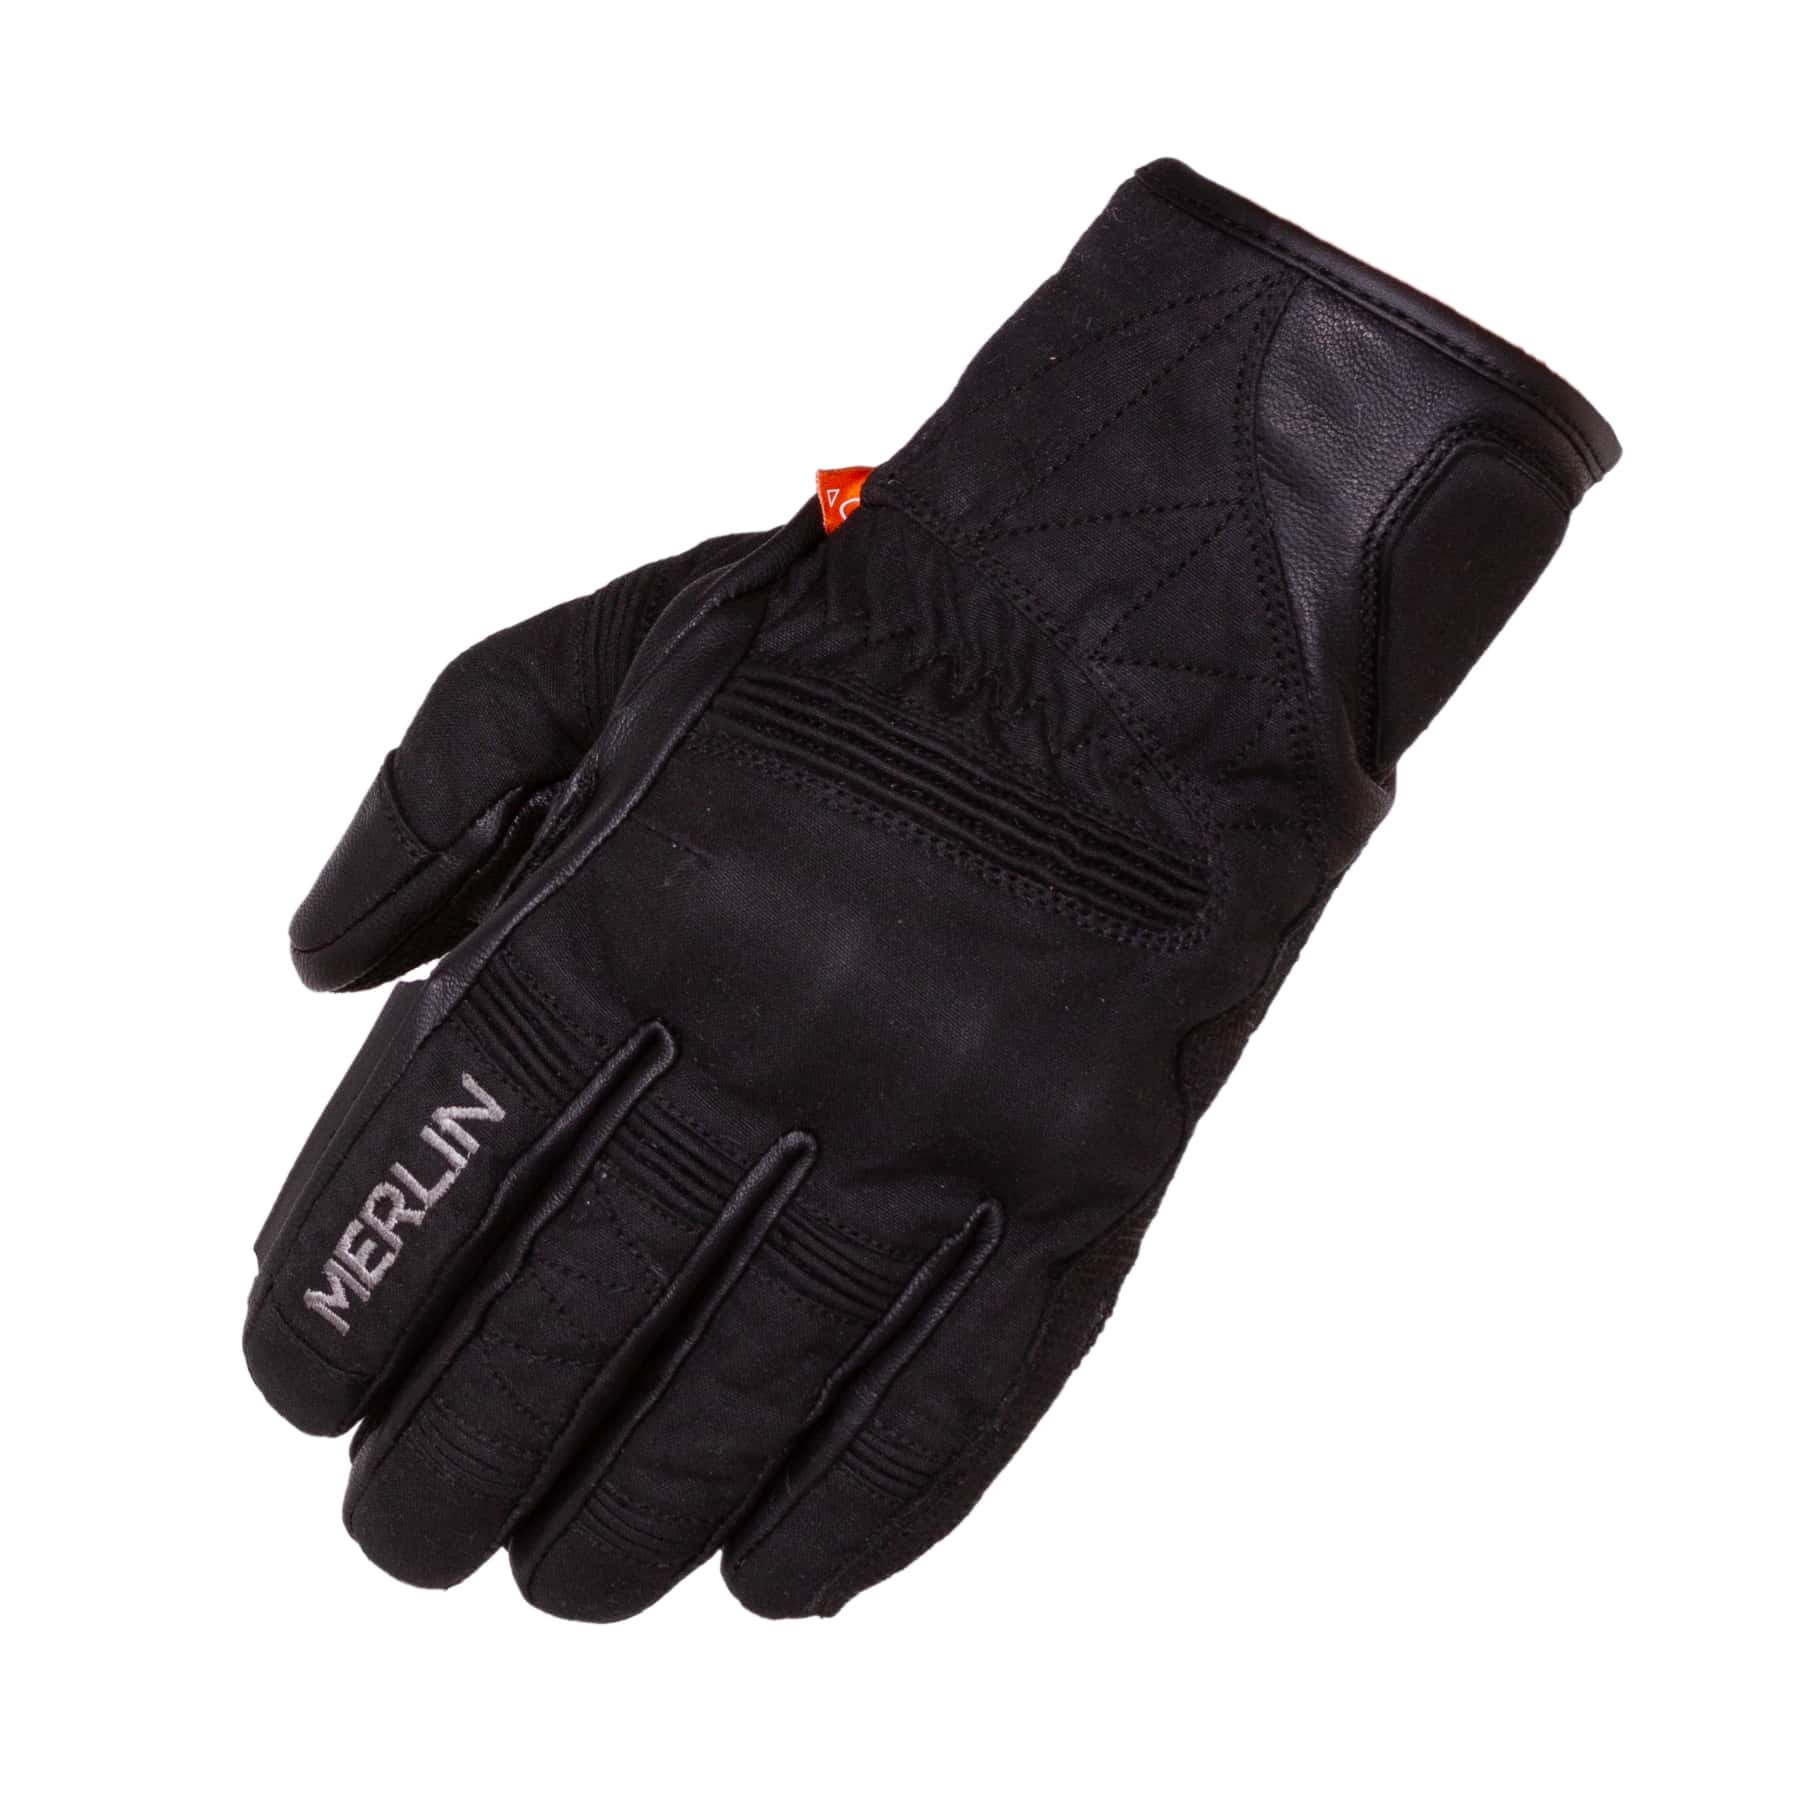 Merlin Mahala Waterproof Explorer motorcycle gloves in black